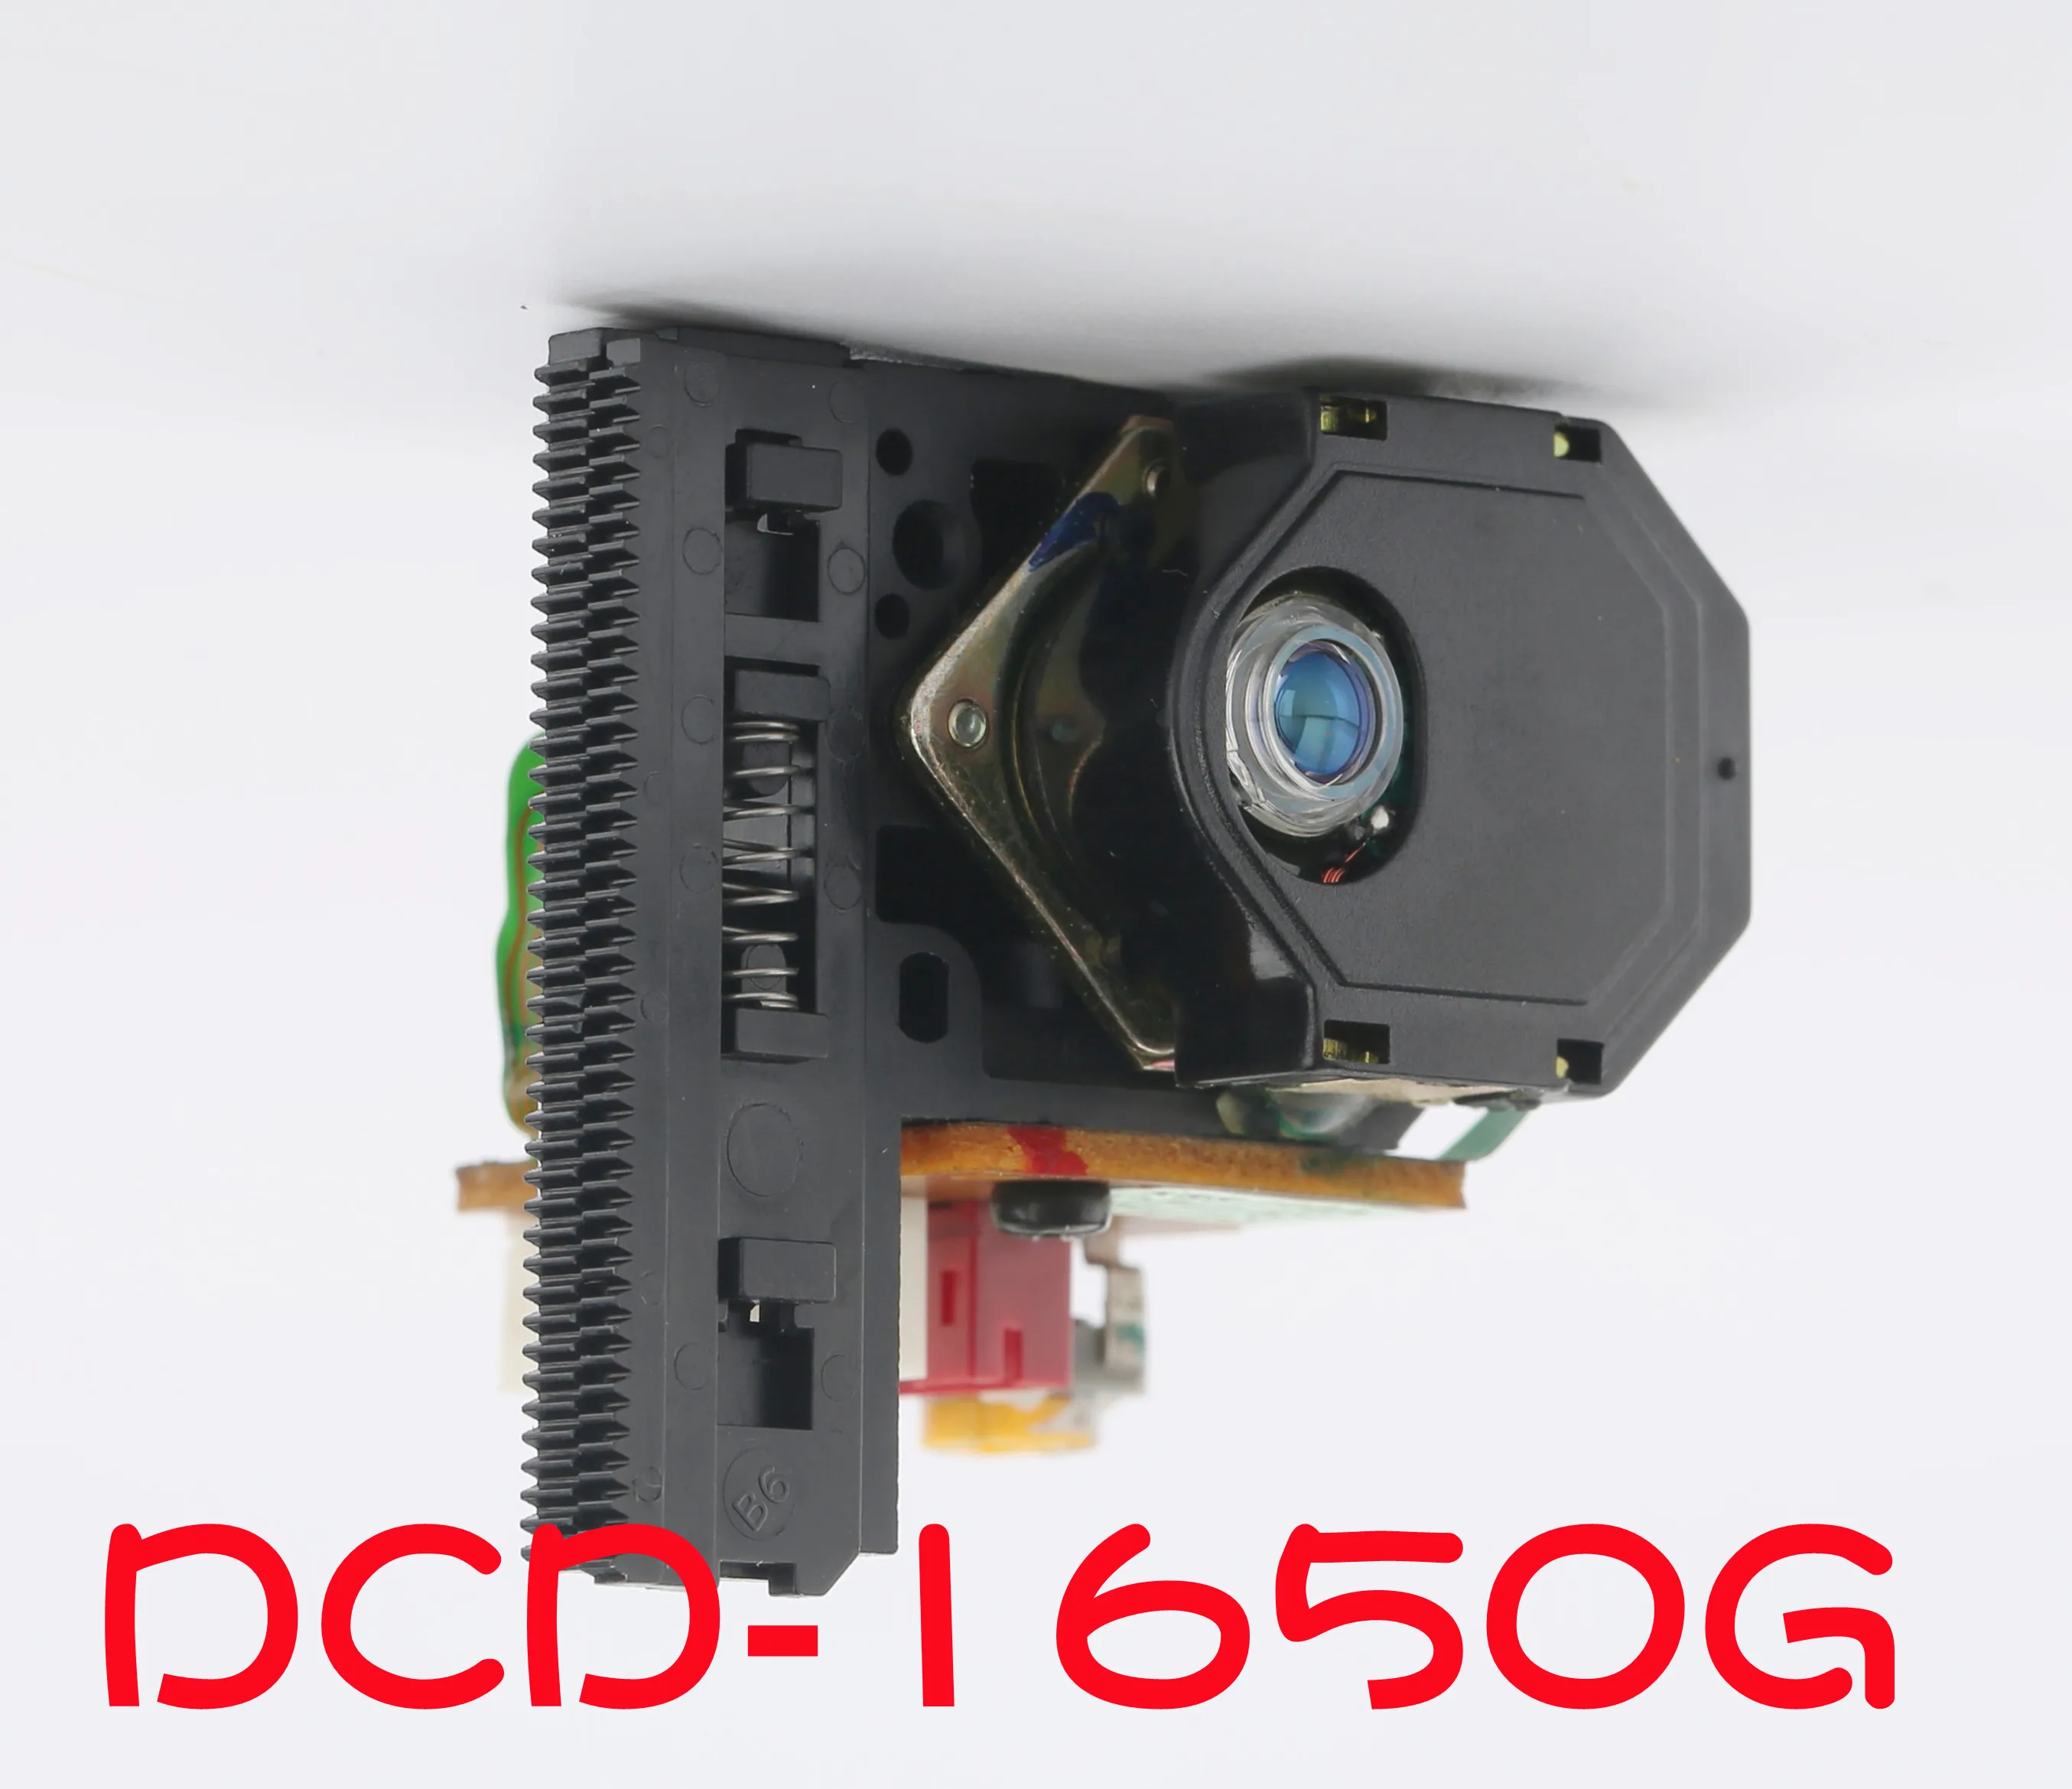 

Замена для DENON DCD-1650G DCD1650G DCD 1650G радио CD плеер лазерная головка для объектива Оптический Пикап блок оптики запасные части